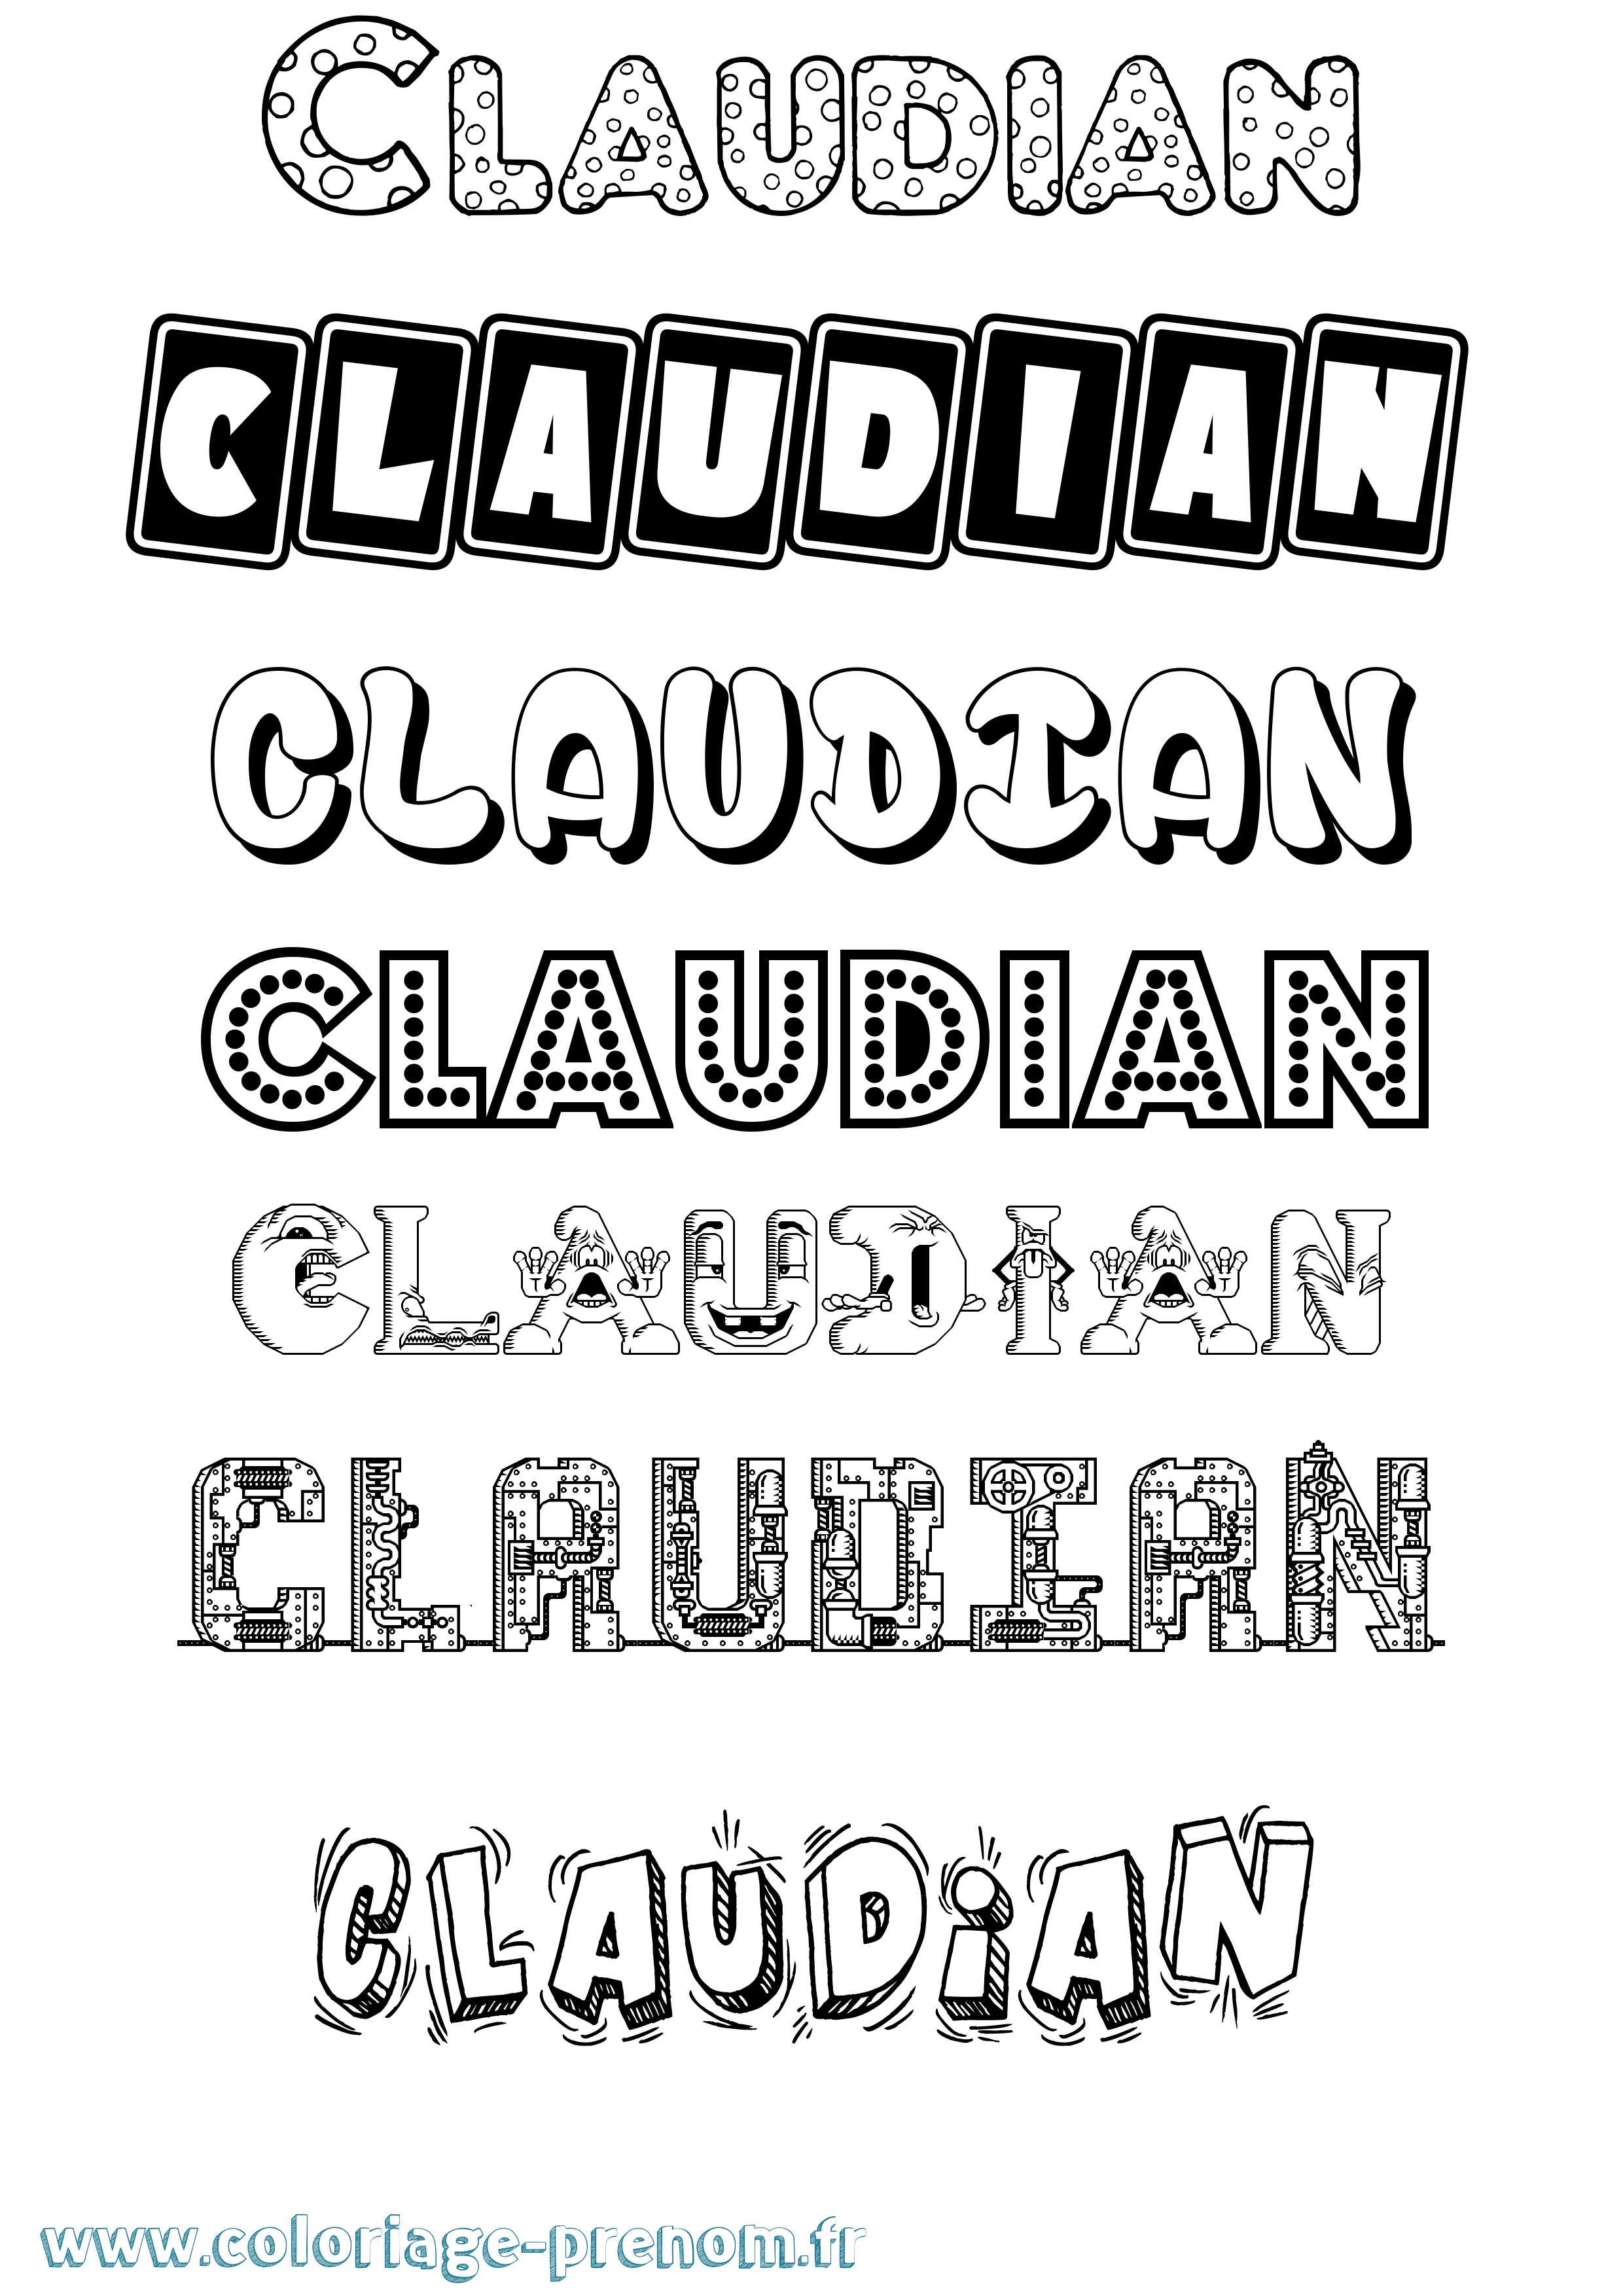 Coloriage prénom Claudian Fun